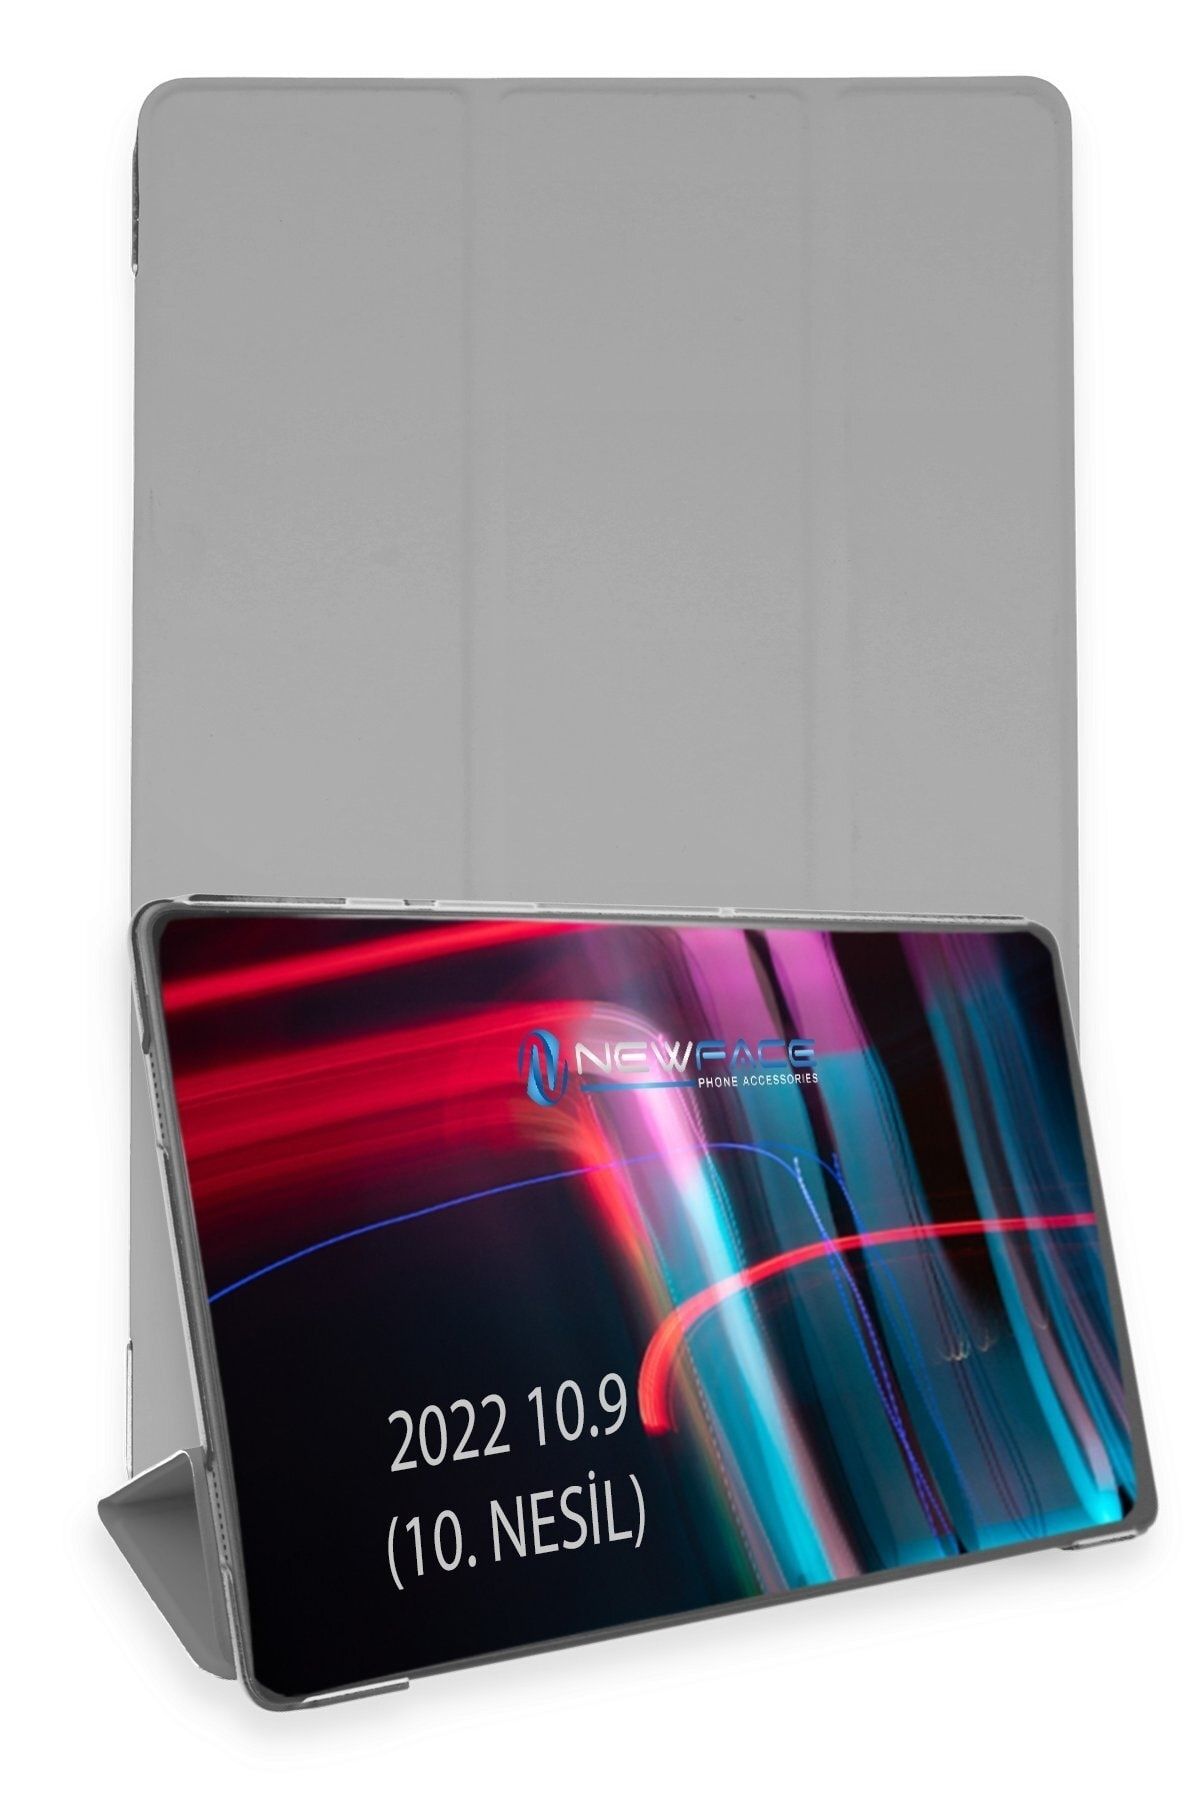 Bilişim Aksesuar Ipad 2022 10.9 (10.nesil) Kılıf Tablet Smart Cover Kılıf - Gri